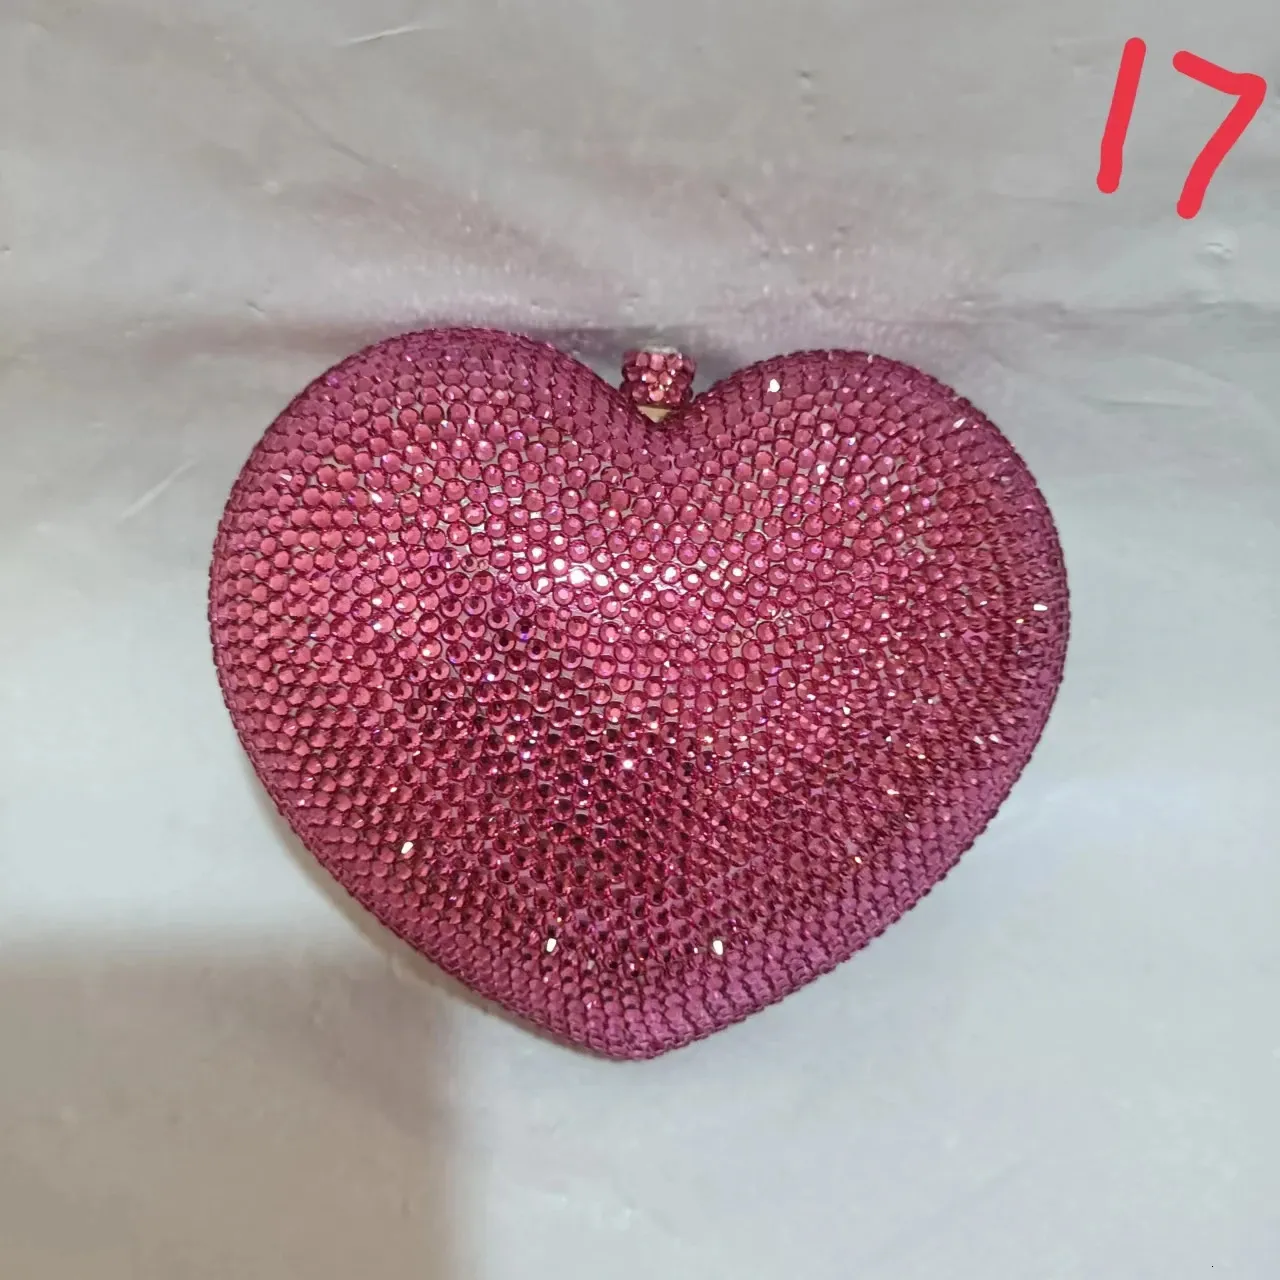 Rojo lleno de diamantes mujeres bolsos de noche embrague Rhinestone boda cumpleaños cristal en forma de corazón señoras cena bolso rosa embragues 240223